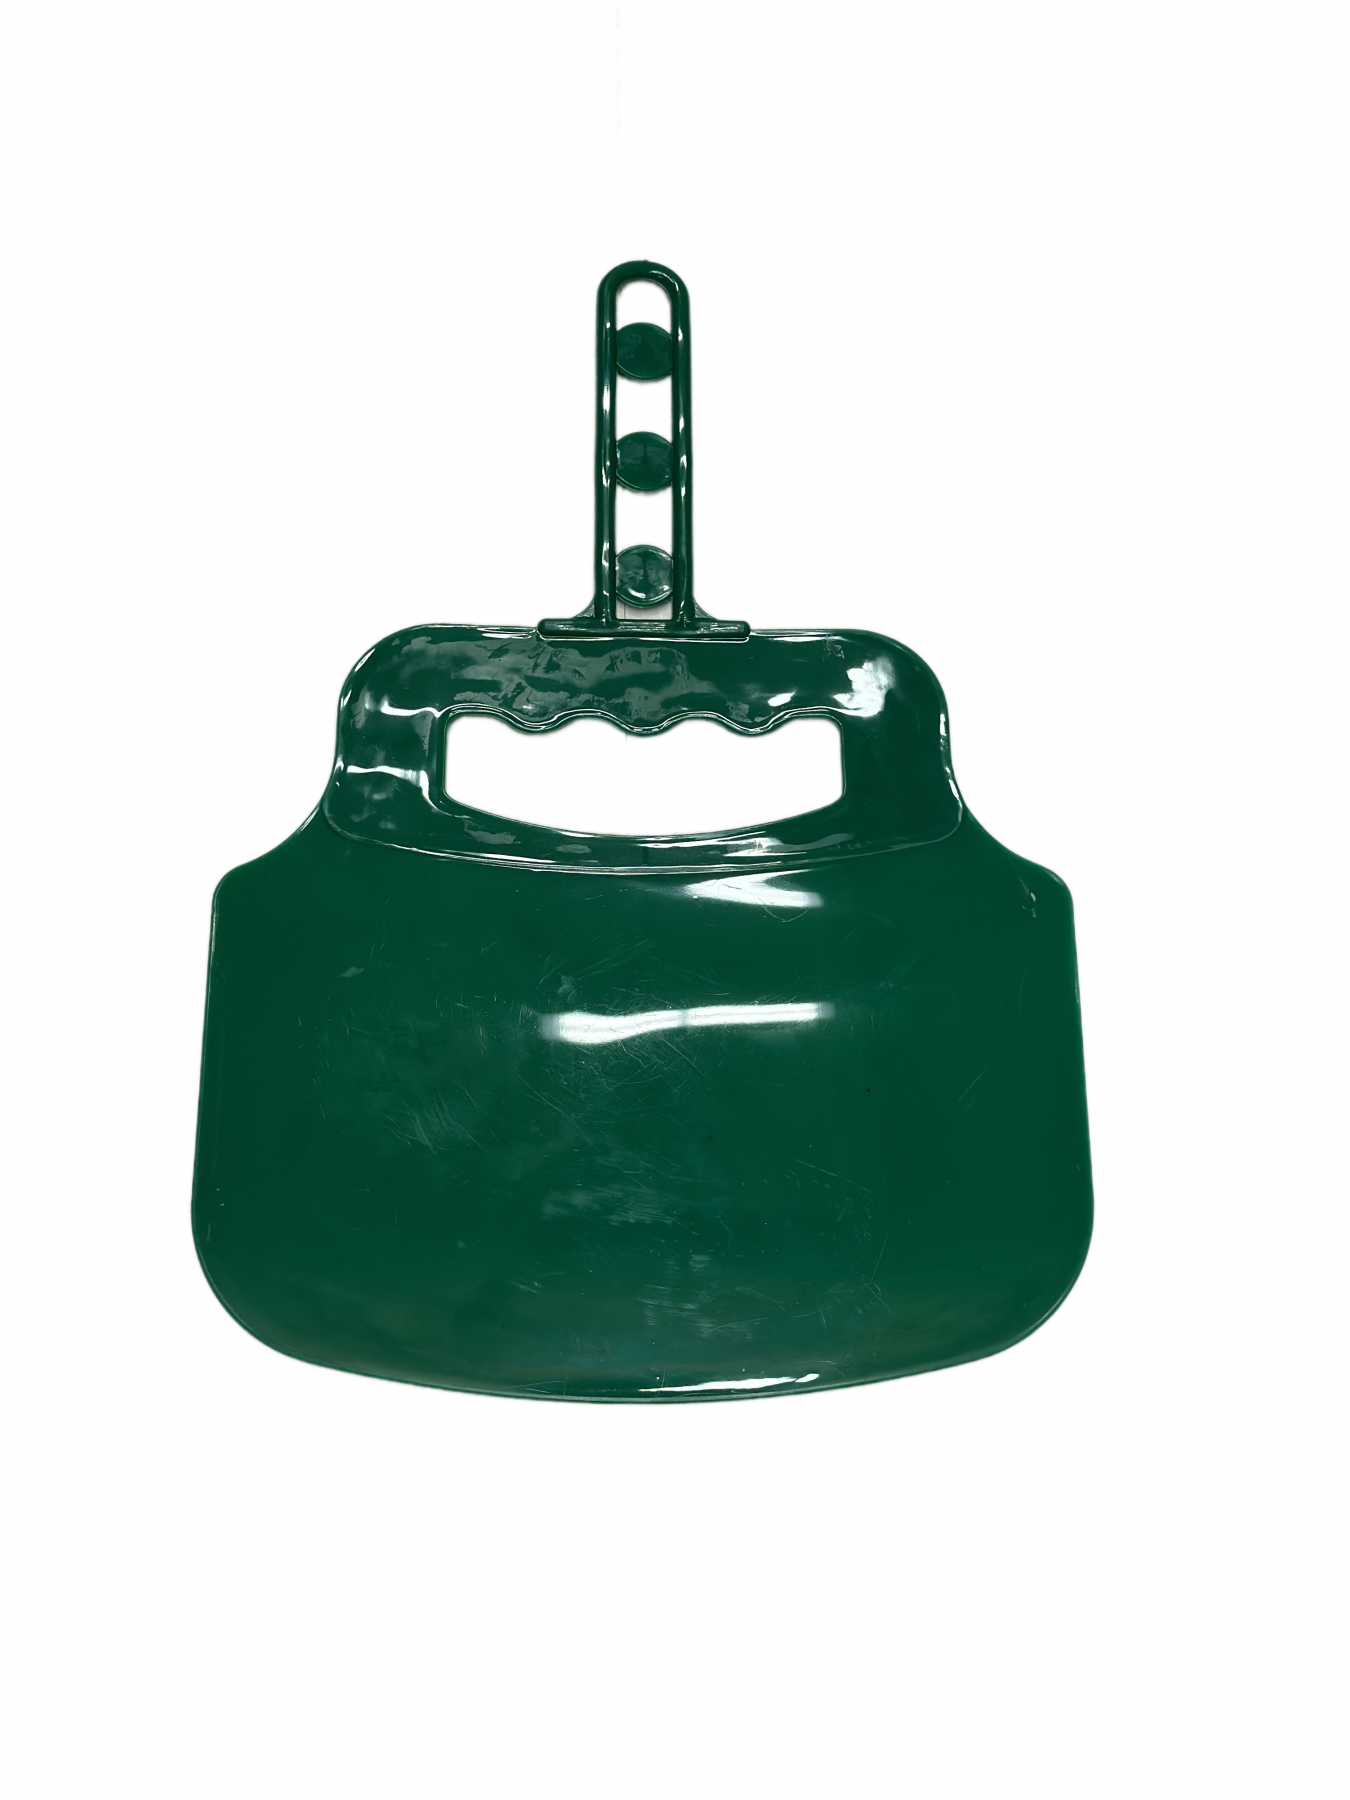 Веер-опахало для розжига мангала (зеленый) BERHAU 101911